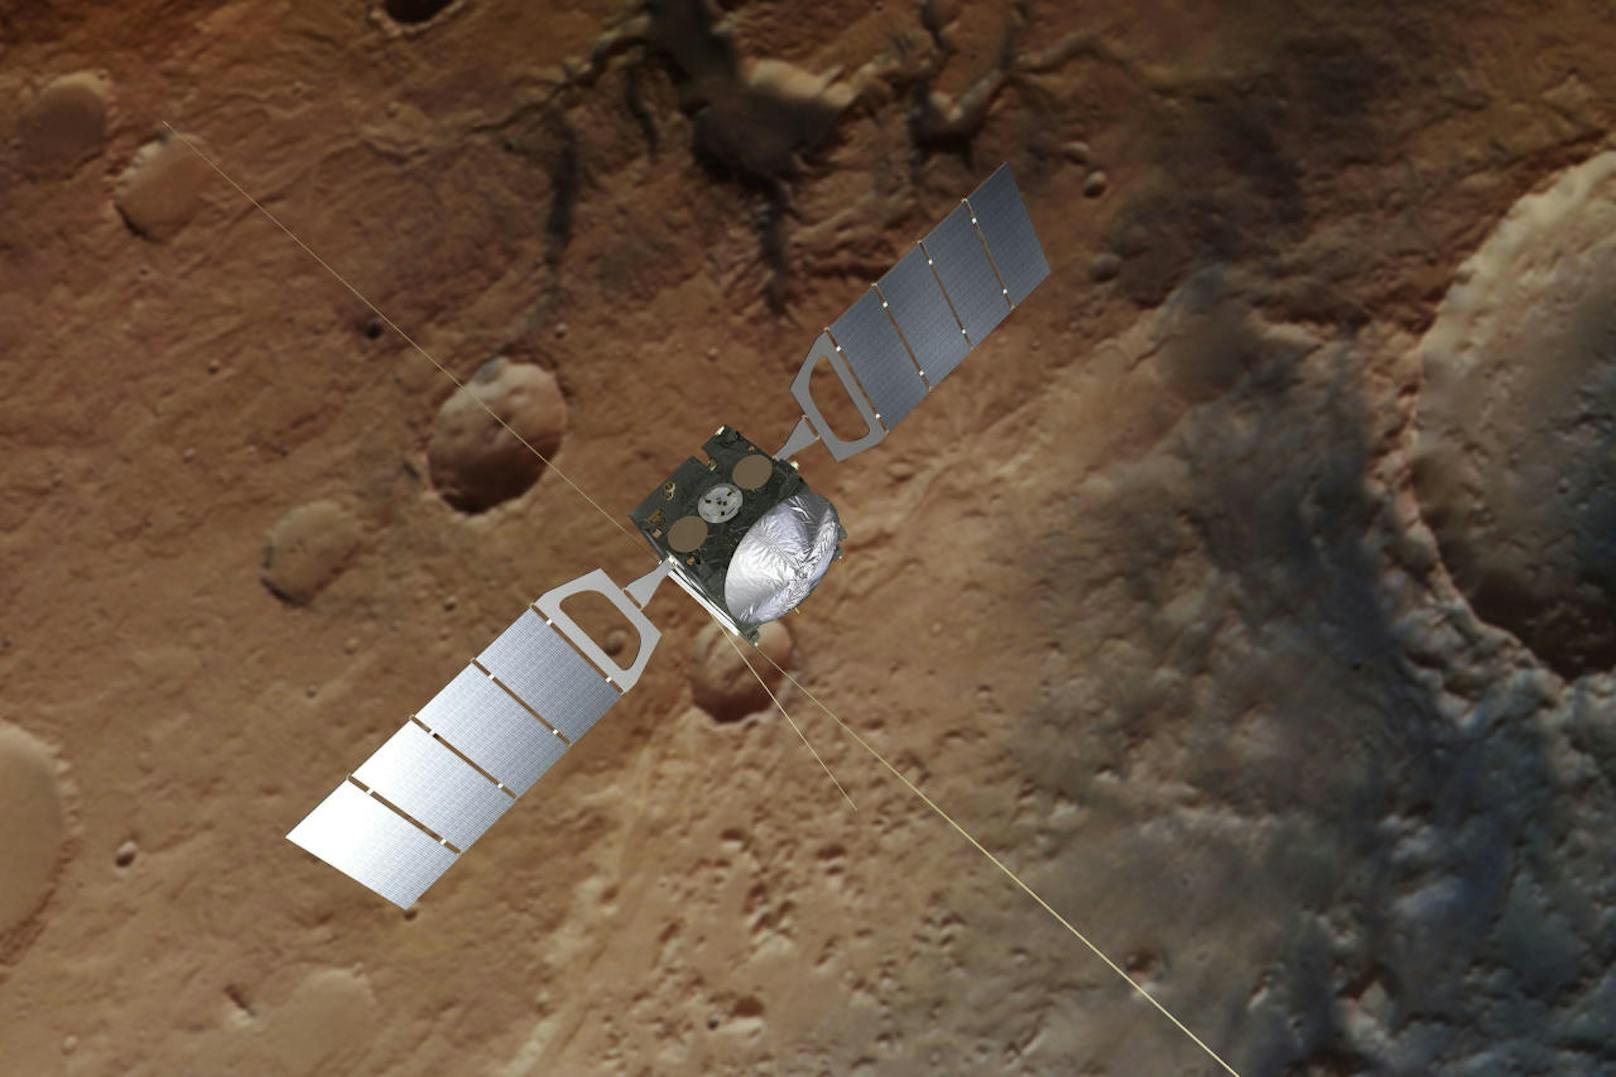 Der Satellit <b>Mars Express</b> wurde im Juni 2003 gestartet und erreichte den Mars am 25. Dezember desselben Jahres. Ursprünglich sollte er nur 23 Monate aktiv sein. Inzwischen wird mit einer Missionsdauer bis 2022 gerechnet.